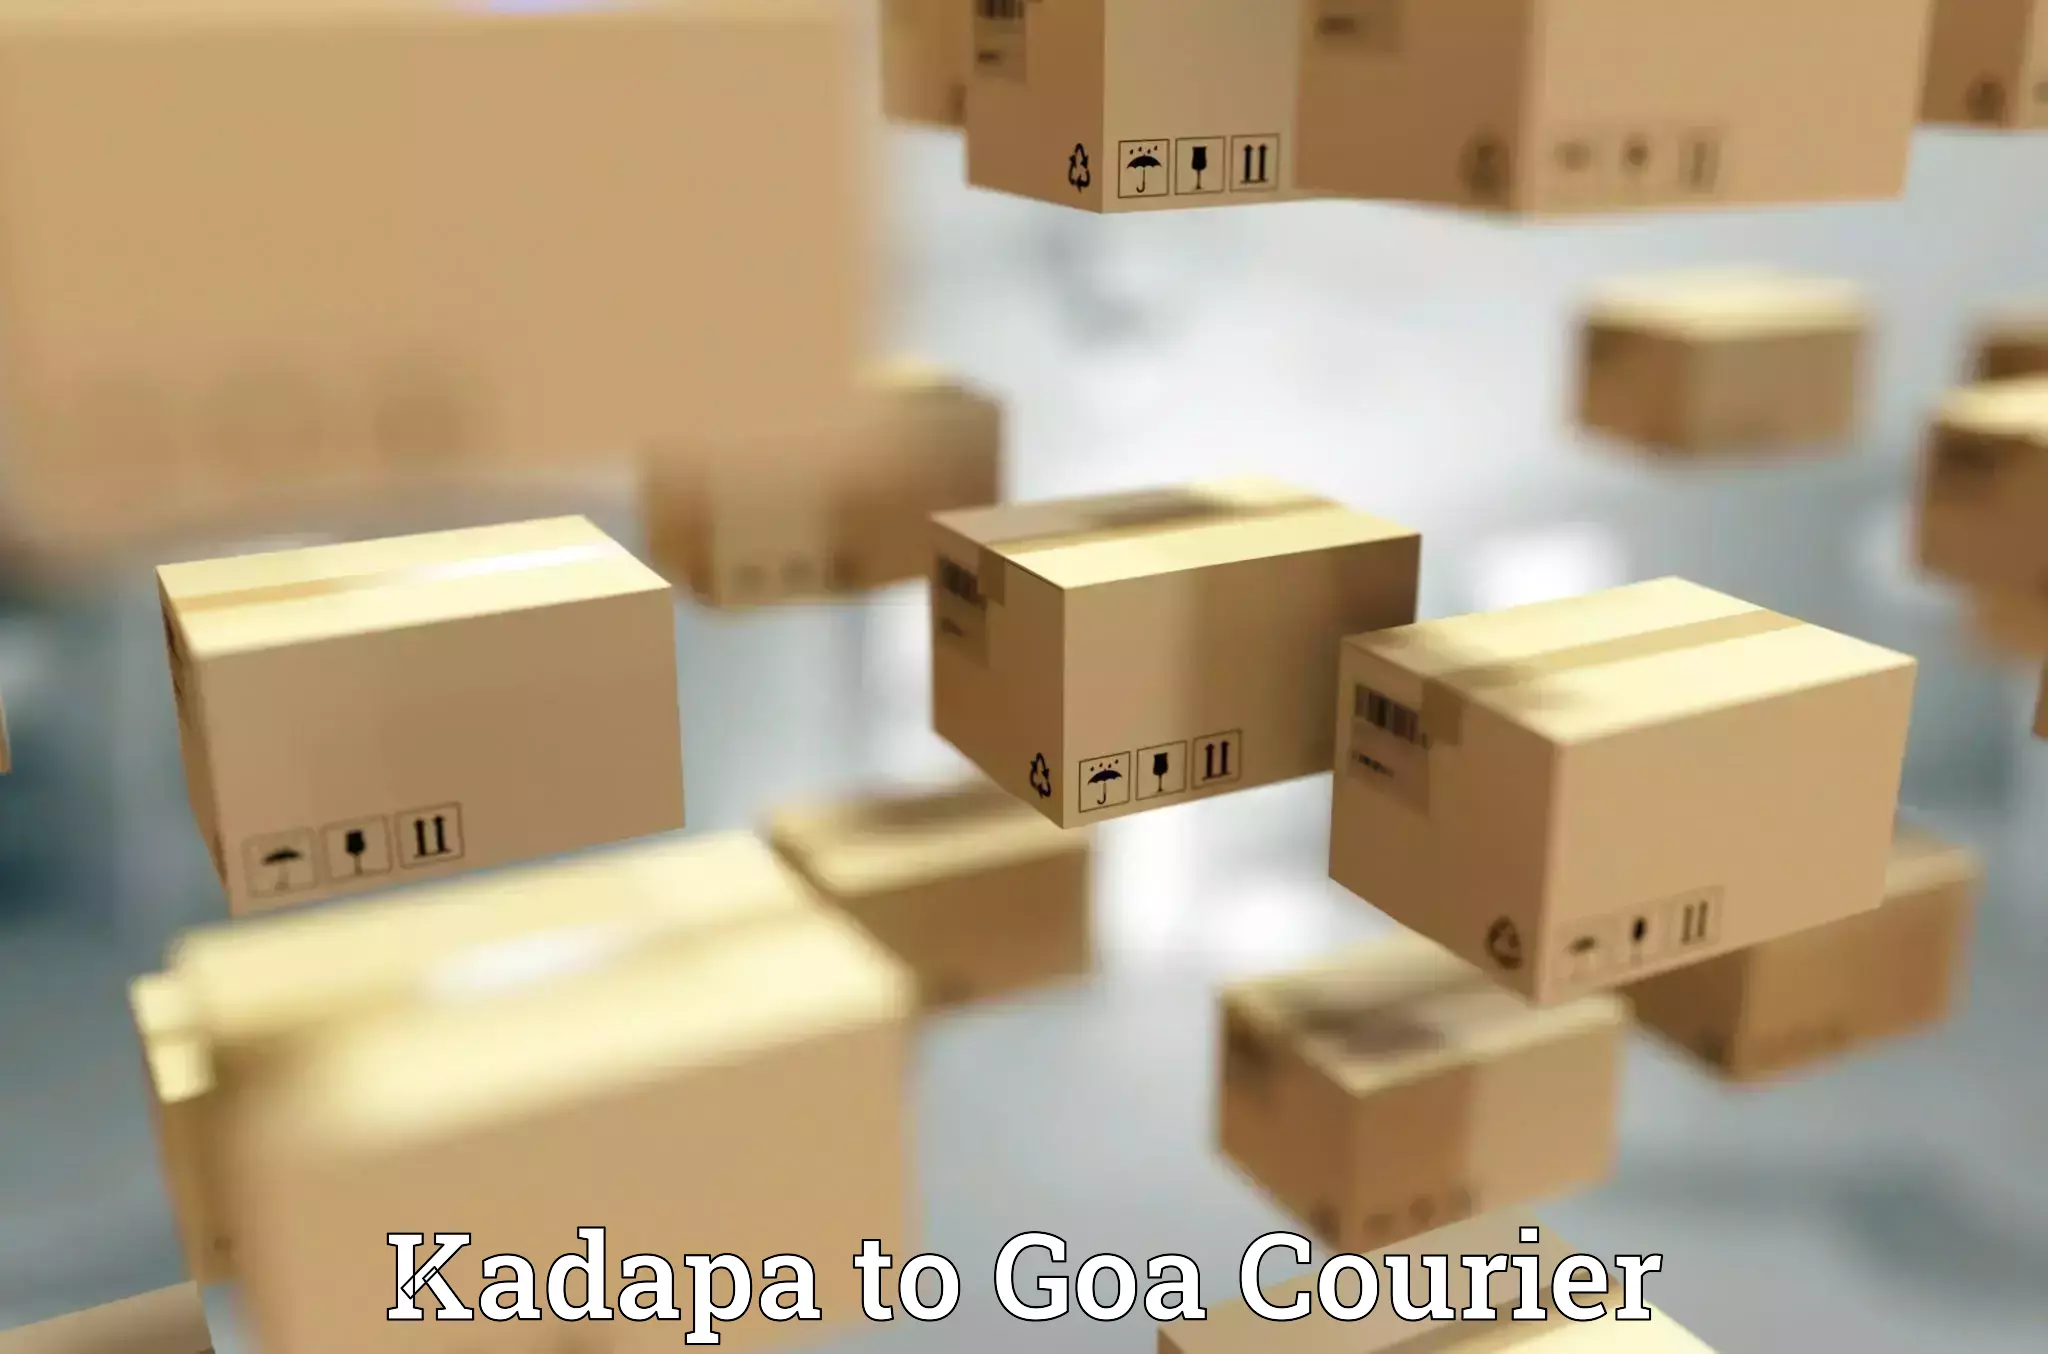 Corporate courier solutions Kadapa to Vasco da Gama